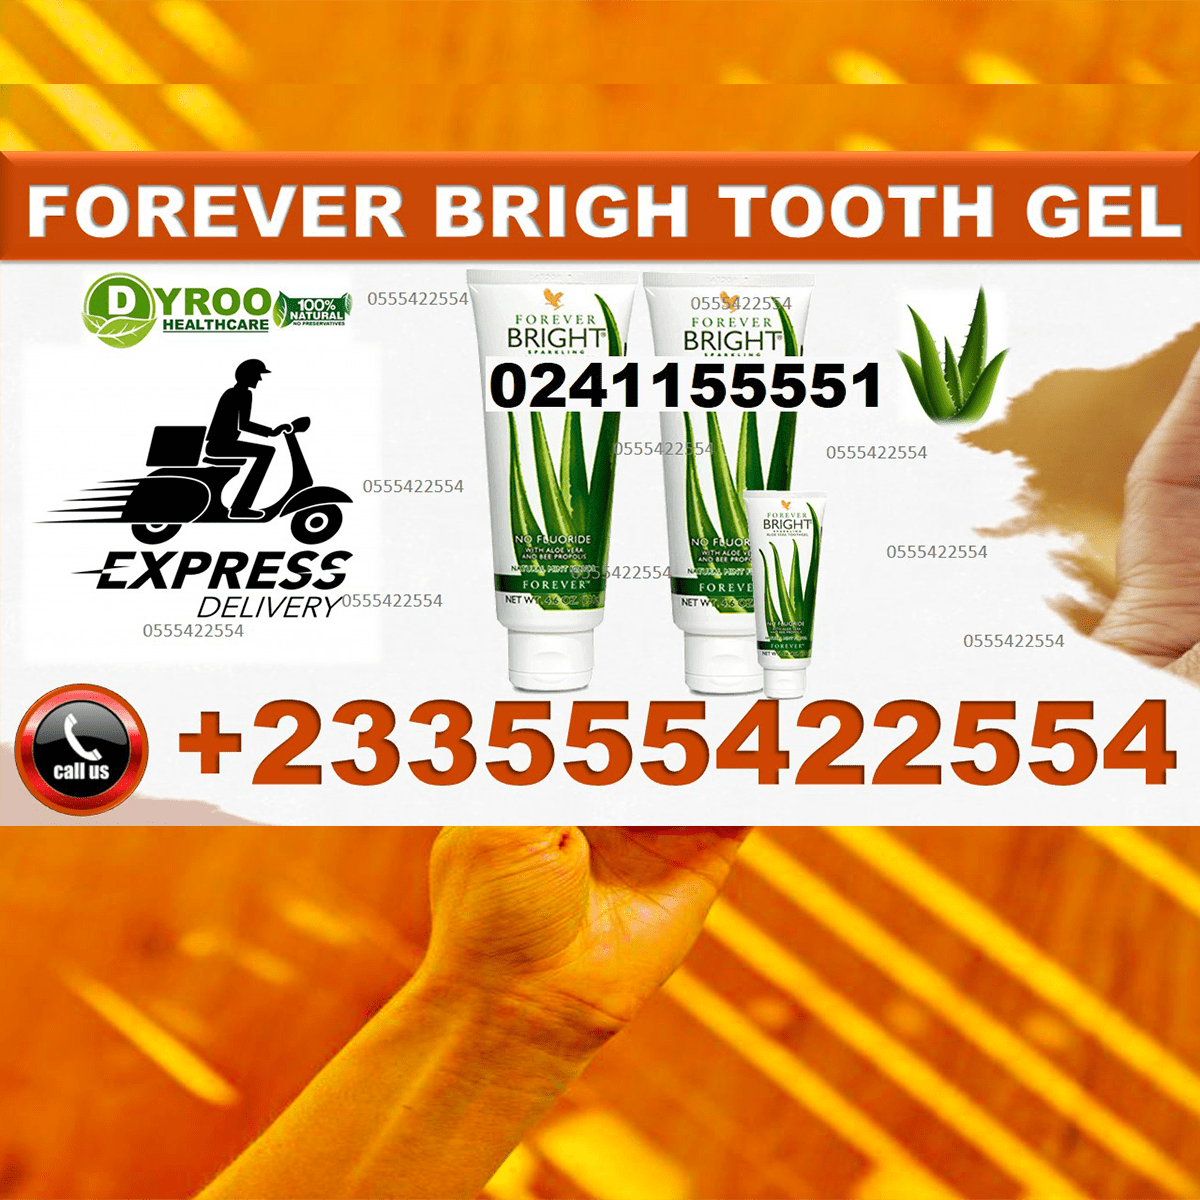 Forever Bright Toothgel in Ghana